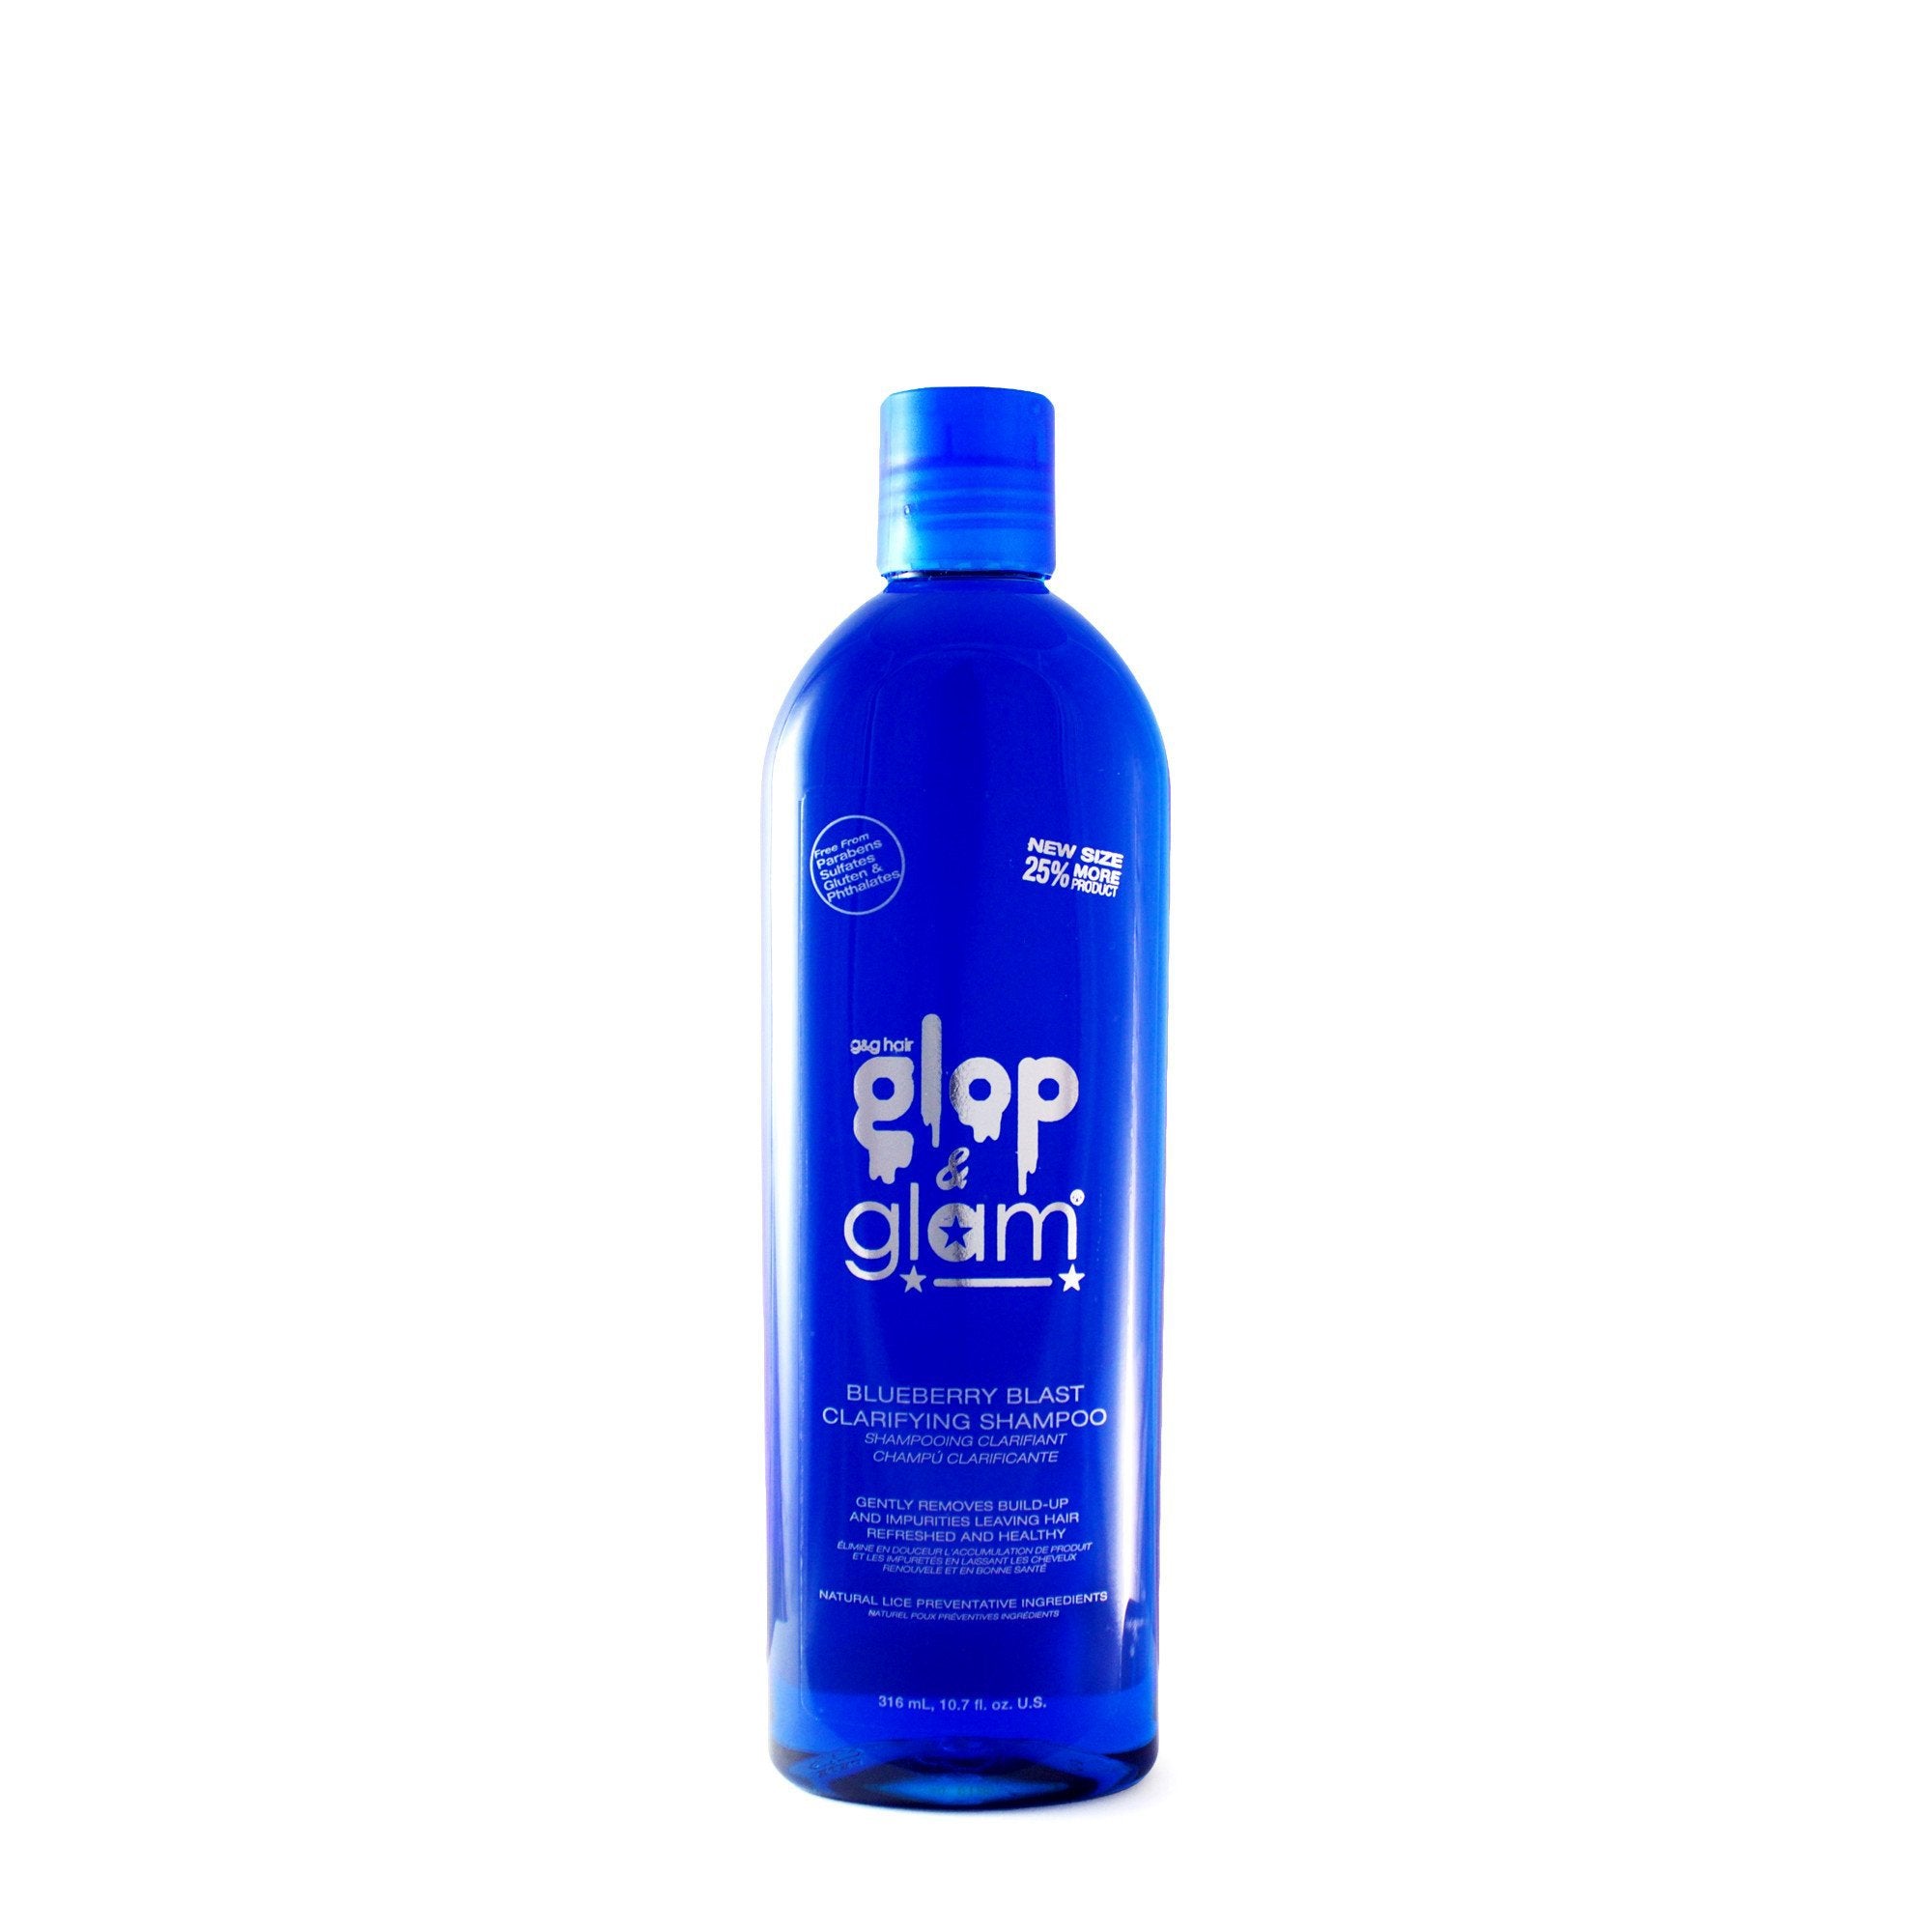 Blueberry Blast Clarifying Shampoo Clarifying Sulfate Free